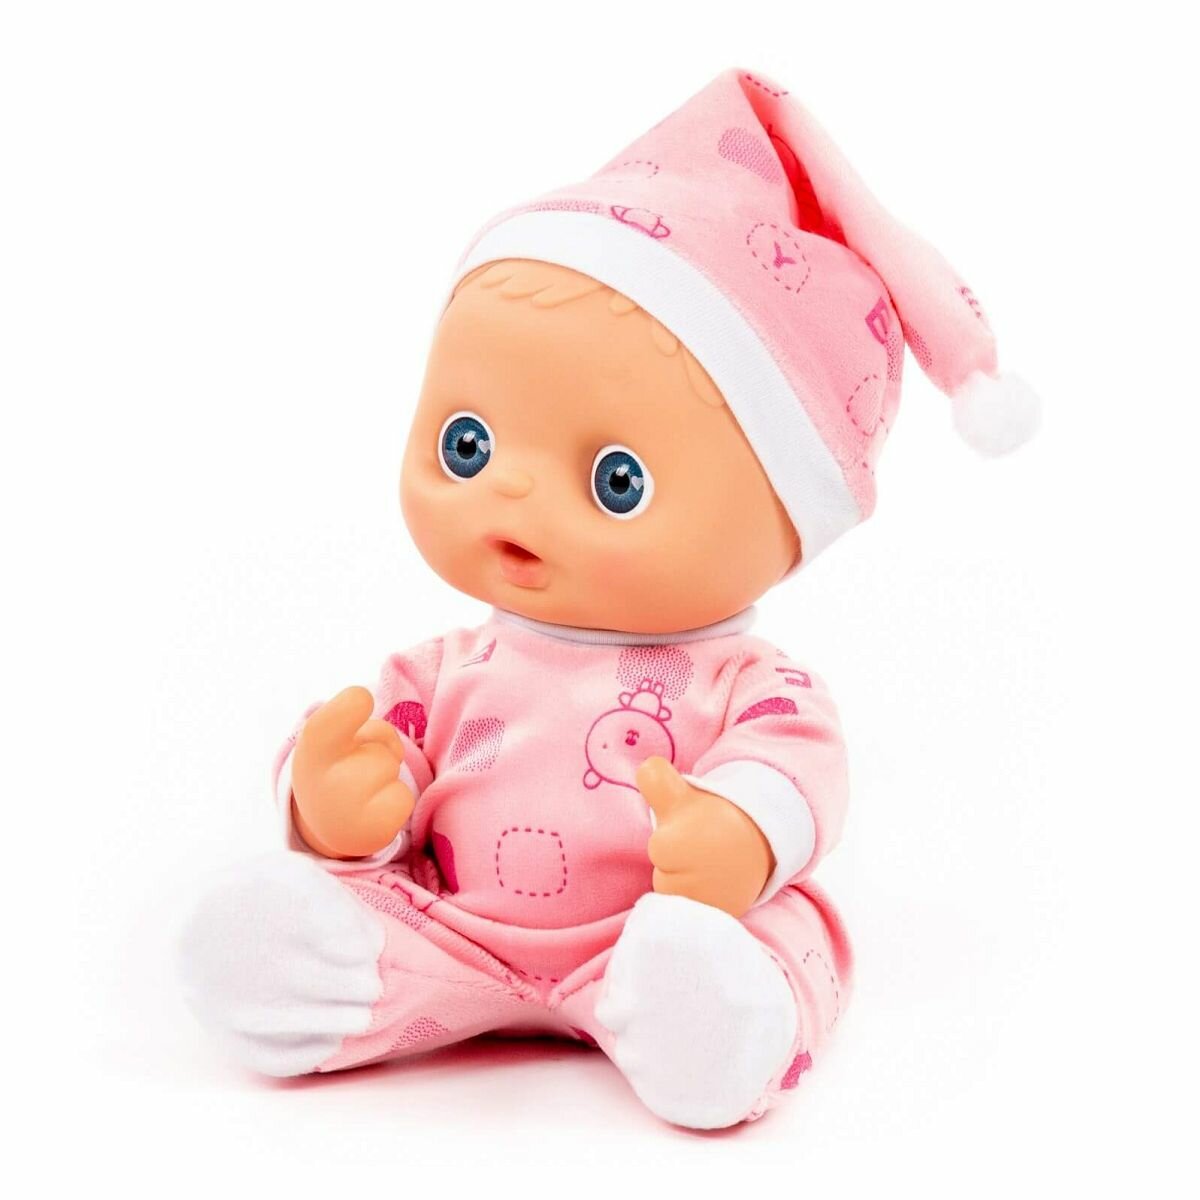 Кукла пупс карапуз в одежде, детская игрушка пупсик гномик для девочек 24 см розовый